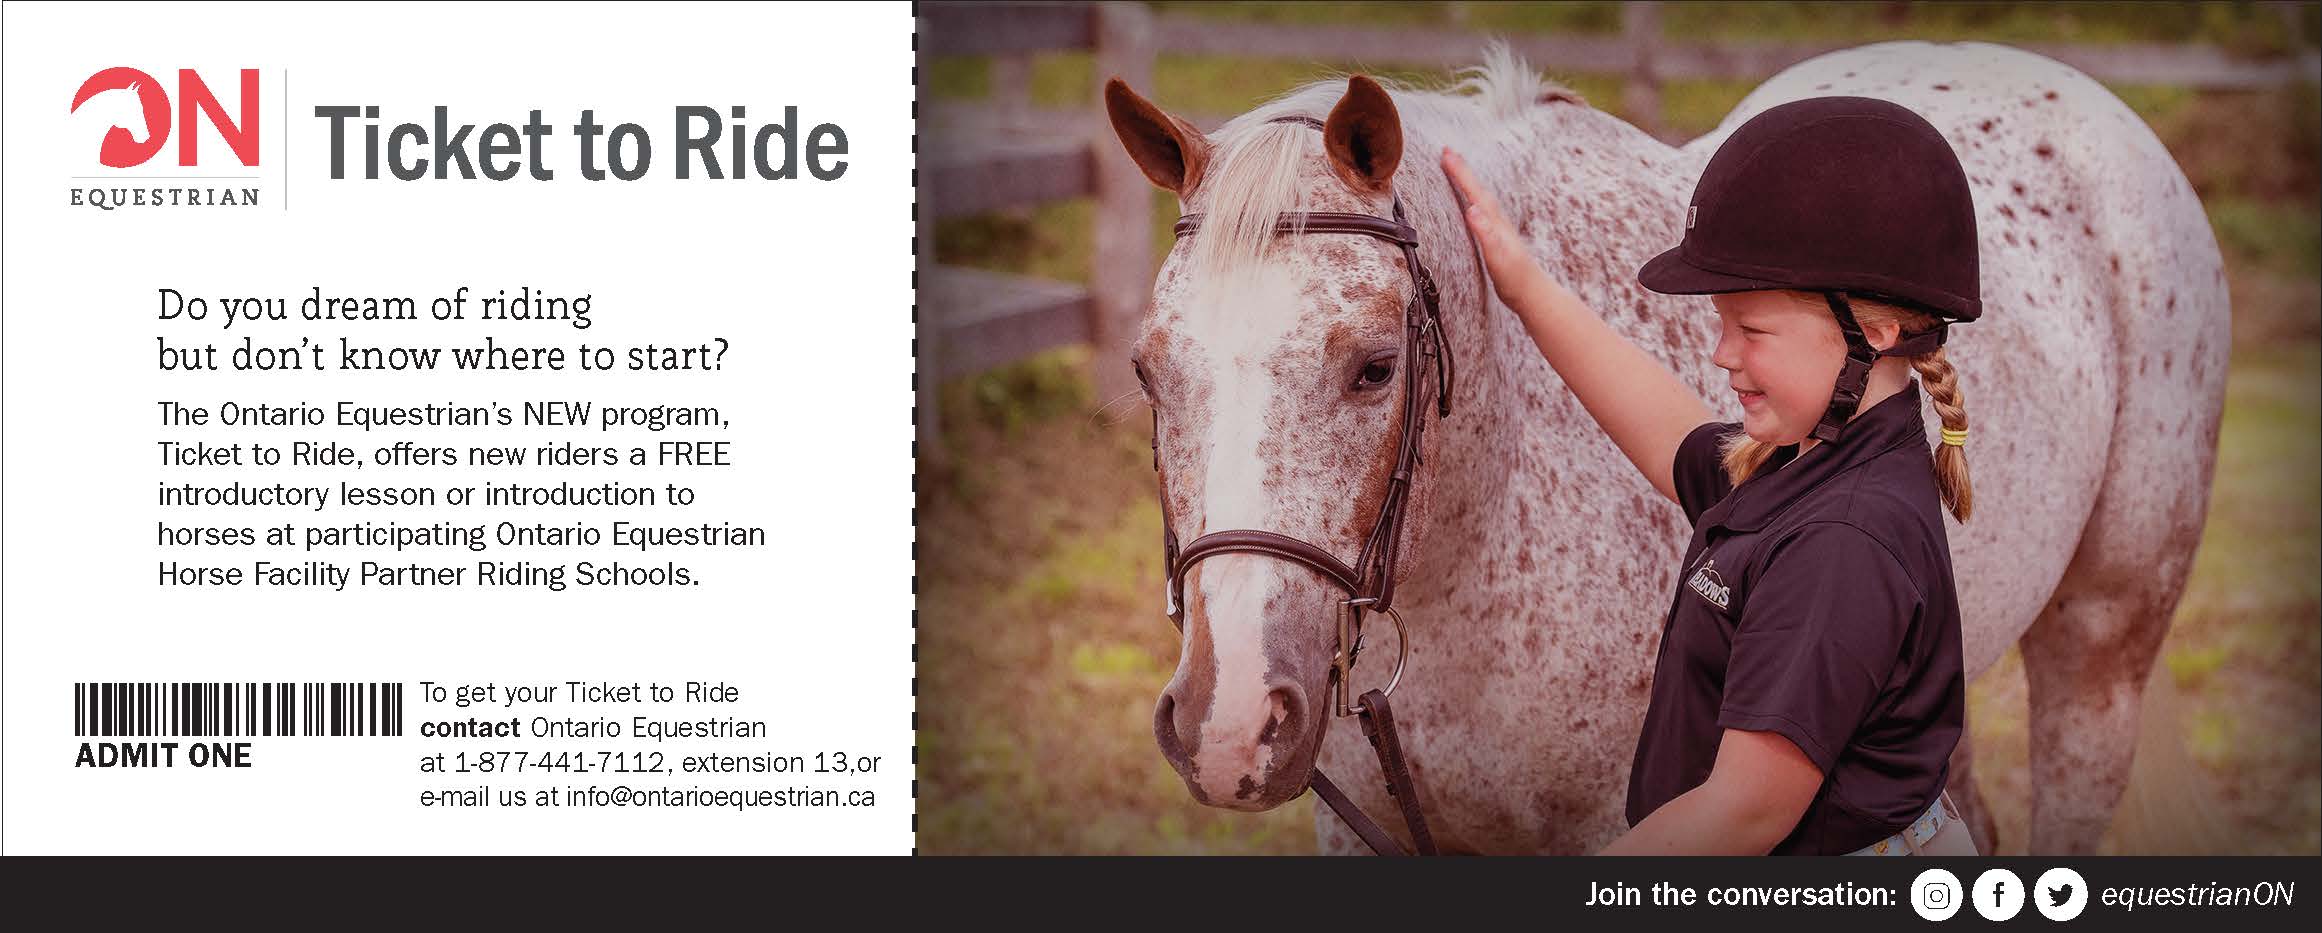 Ontario Equestrian Ticket to Ride ticket